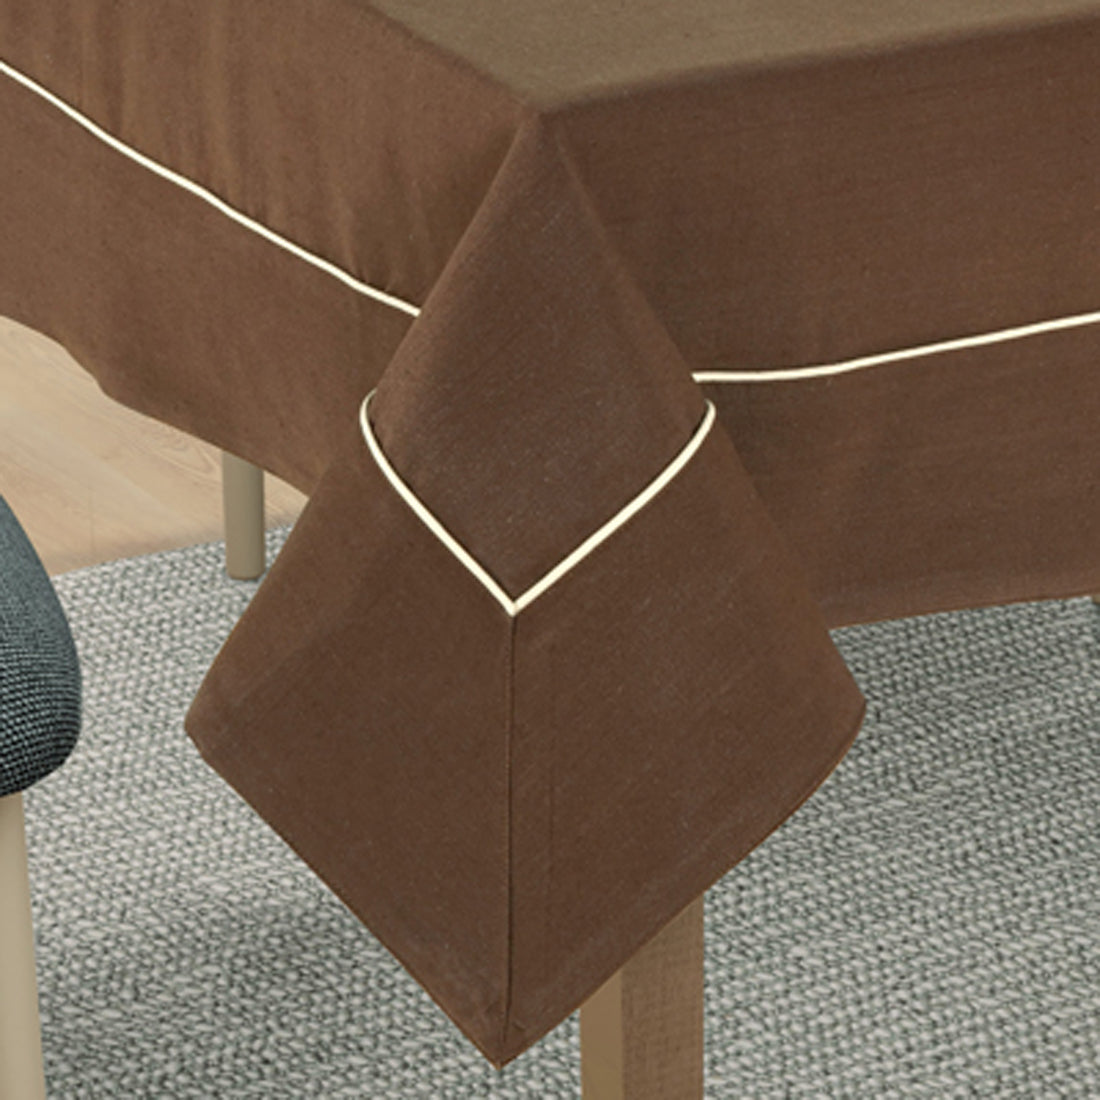 VIRGO Woven Cotton Plain Table Cover - Coffee